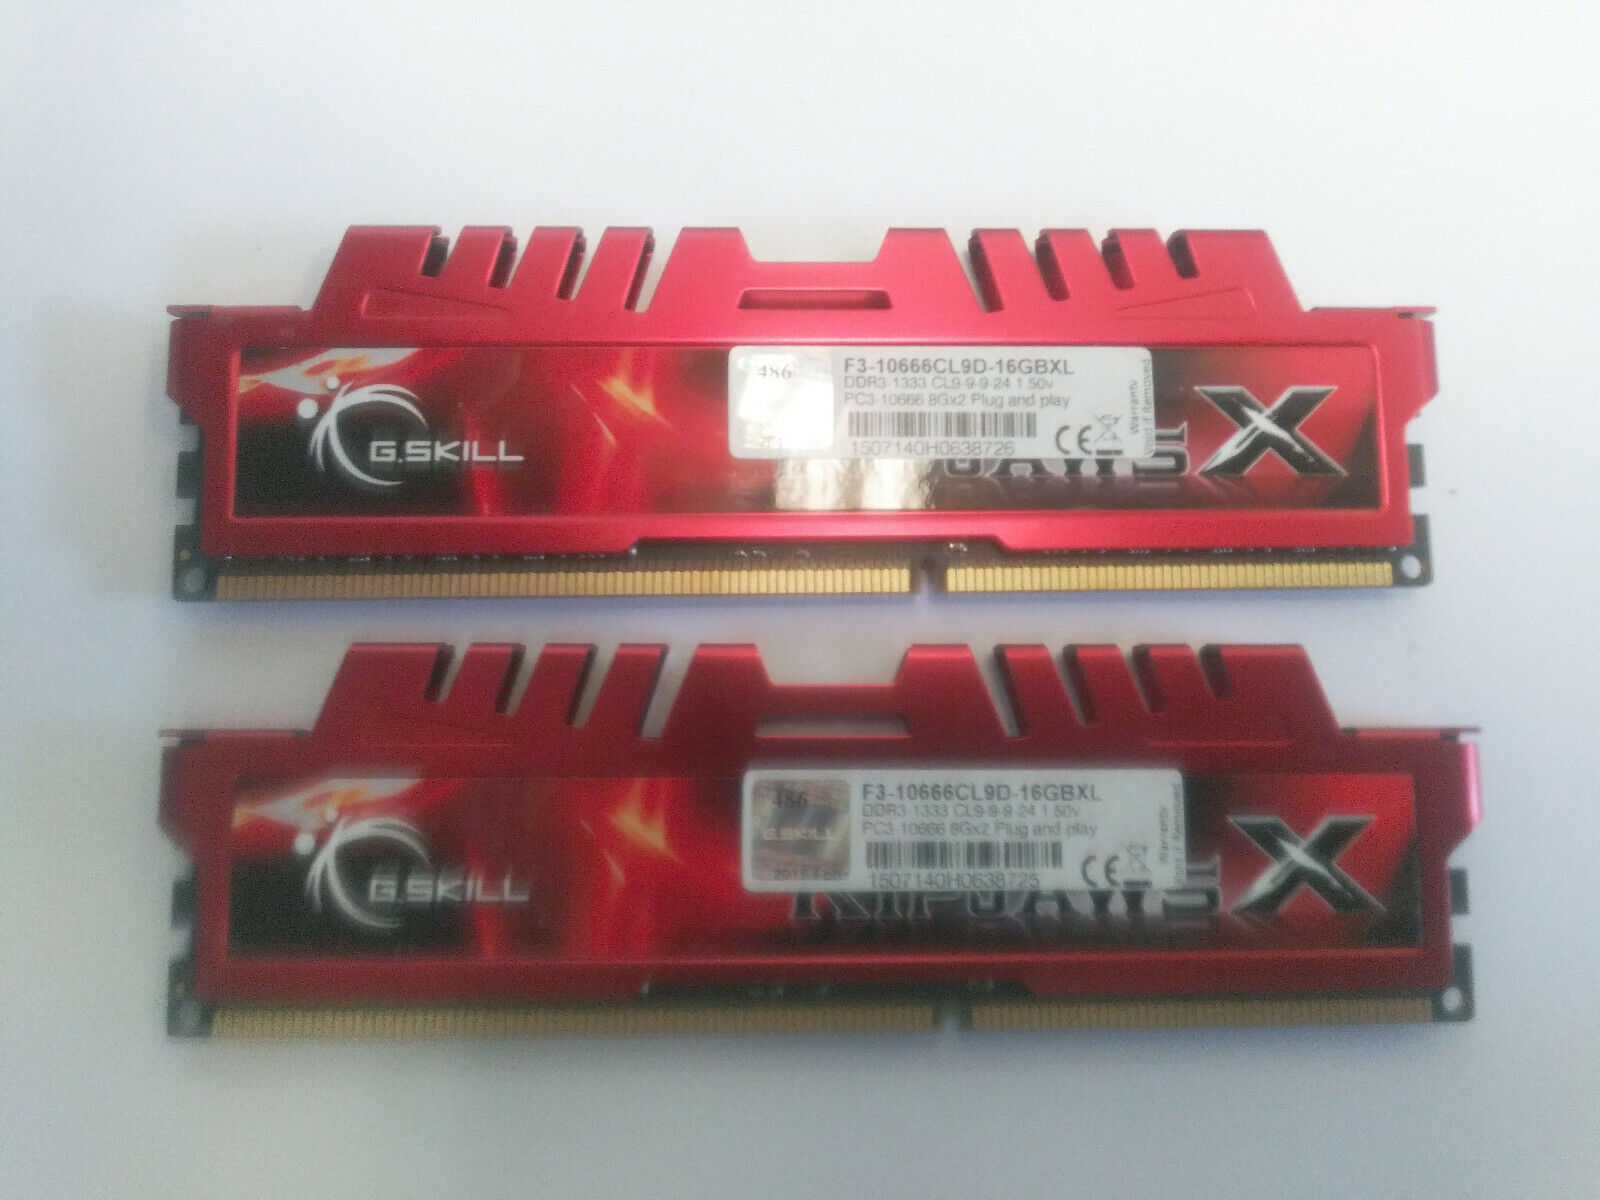 G.SKILL Ripjaws X 16GB (2x8GB) DDR3-1333MHz Memory RAM F3-10666CL9D-16GBXL (P1.c